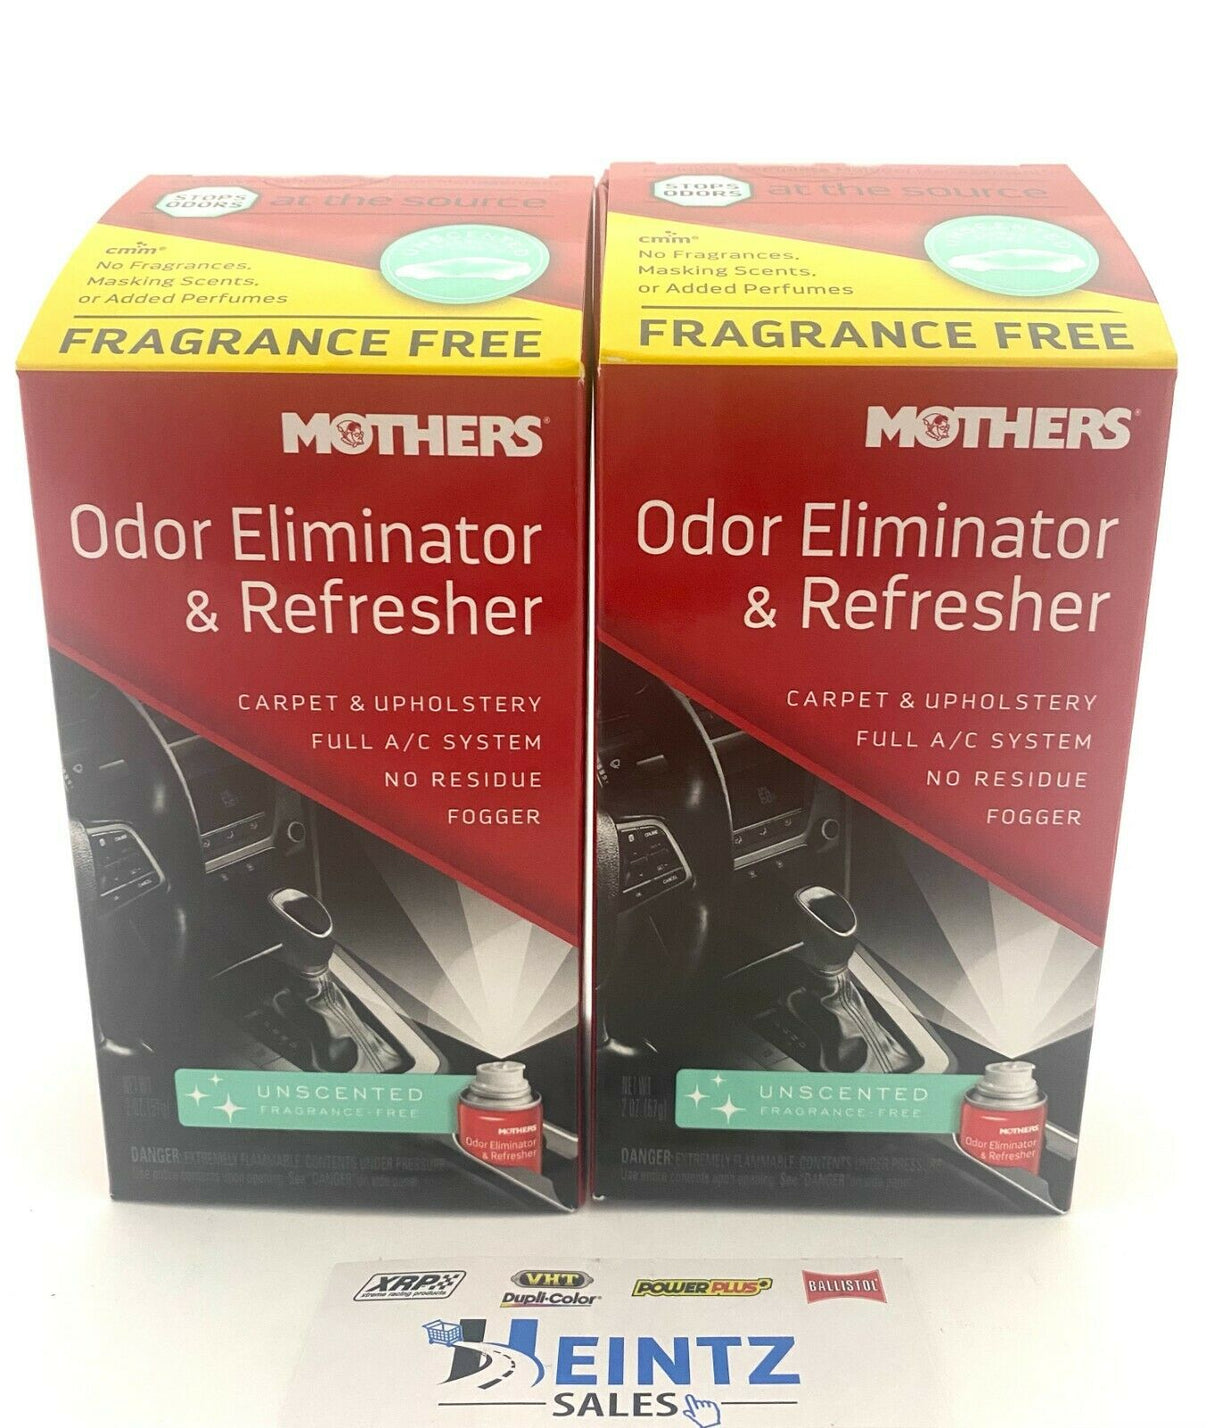 MOTHERS 06810 Odor Eliminator & Refresher 2 PACK - Fragrance Free - Fogger - 2 oz.